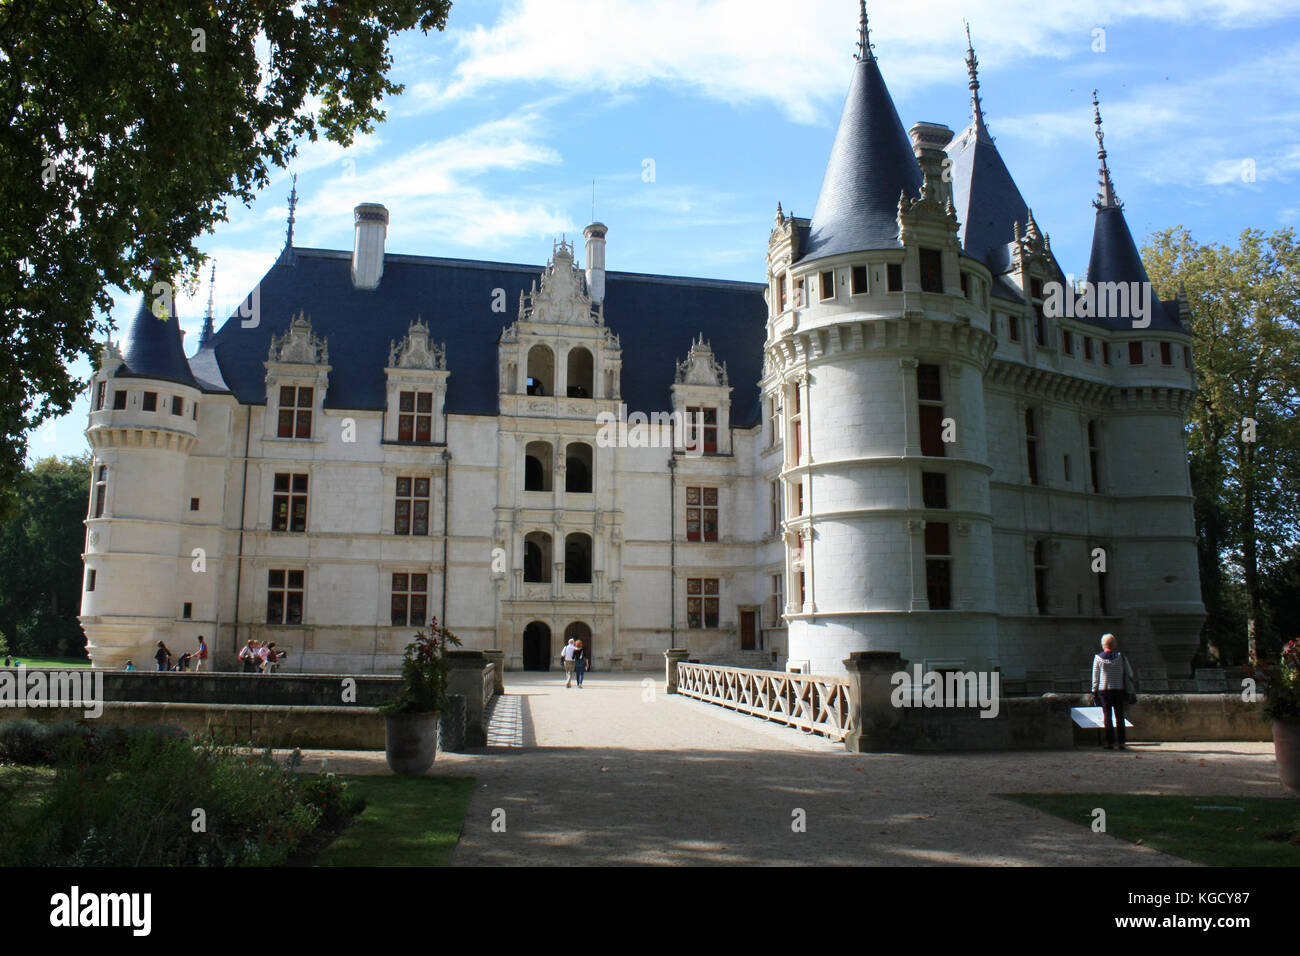 Palacio renacentista de Azay-le-Rideau por el río Indre, Francia Foto de stock